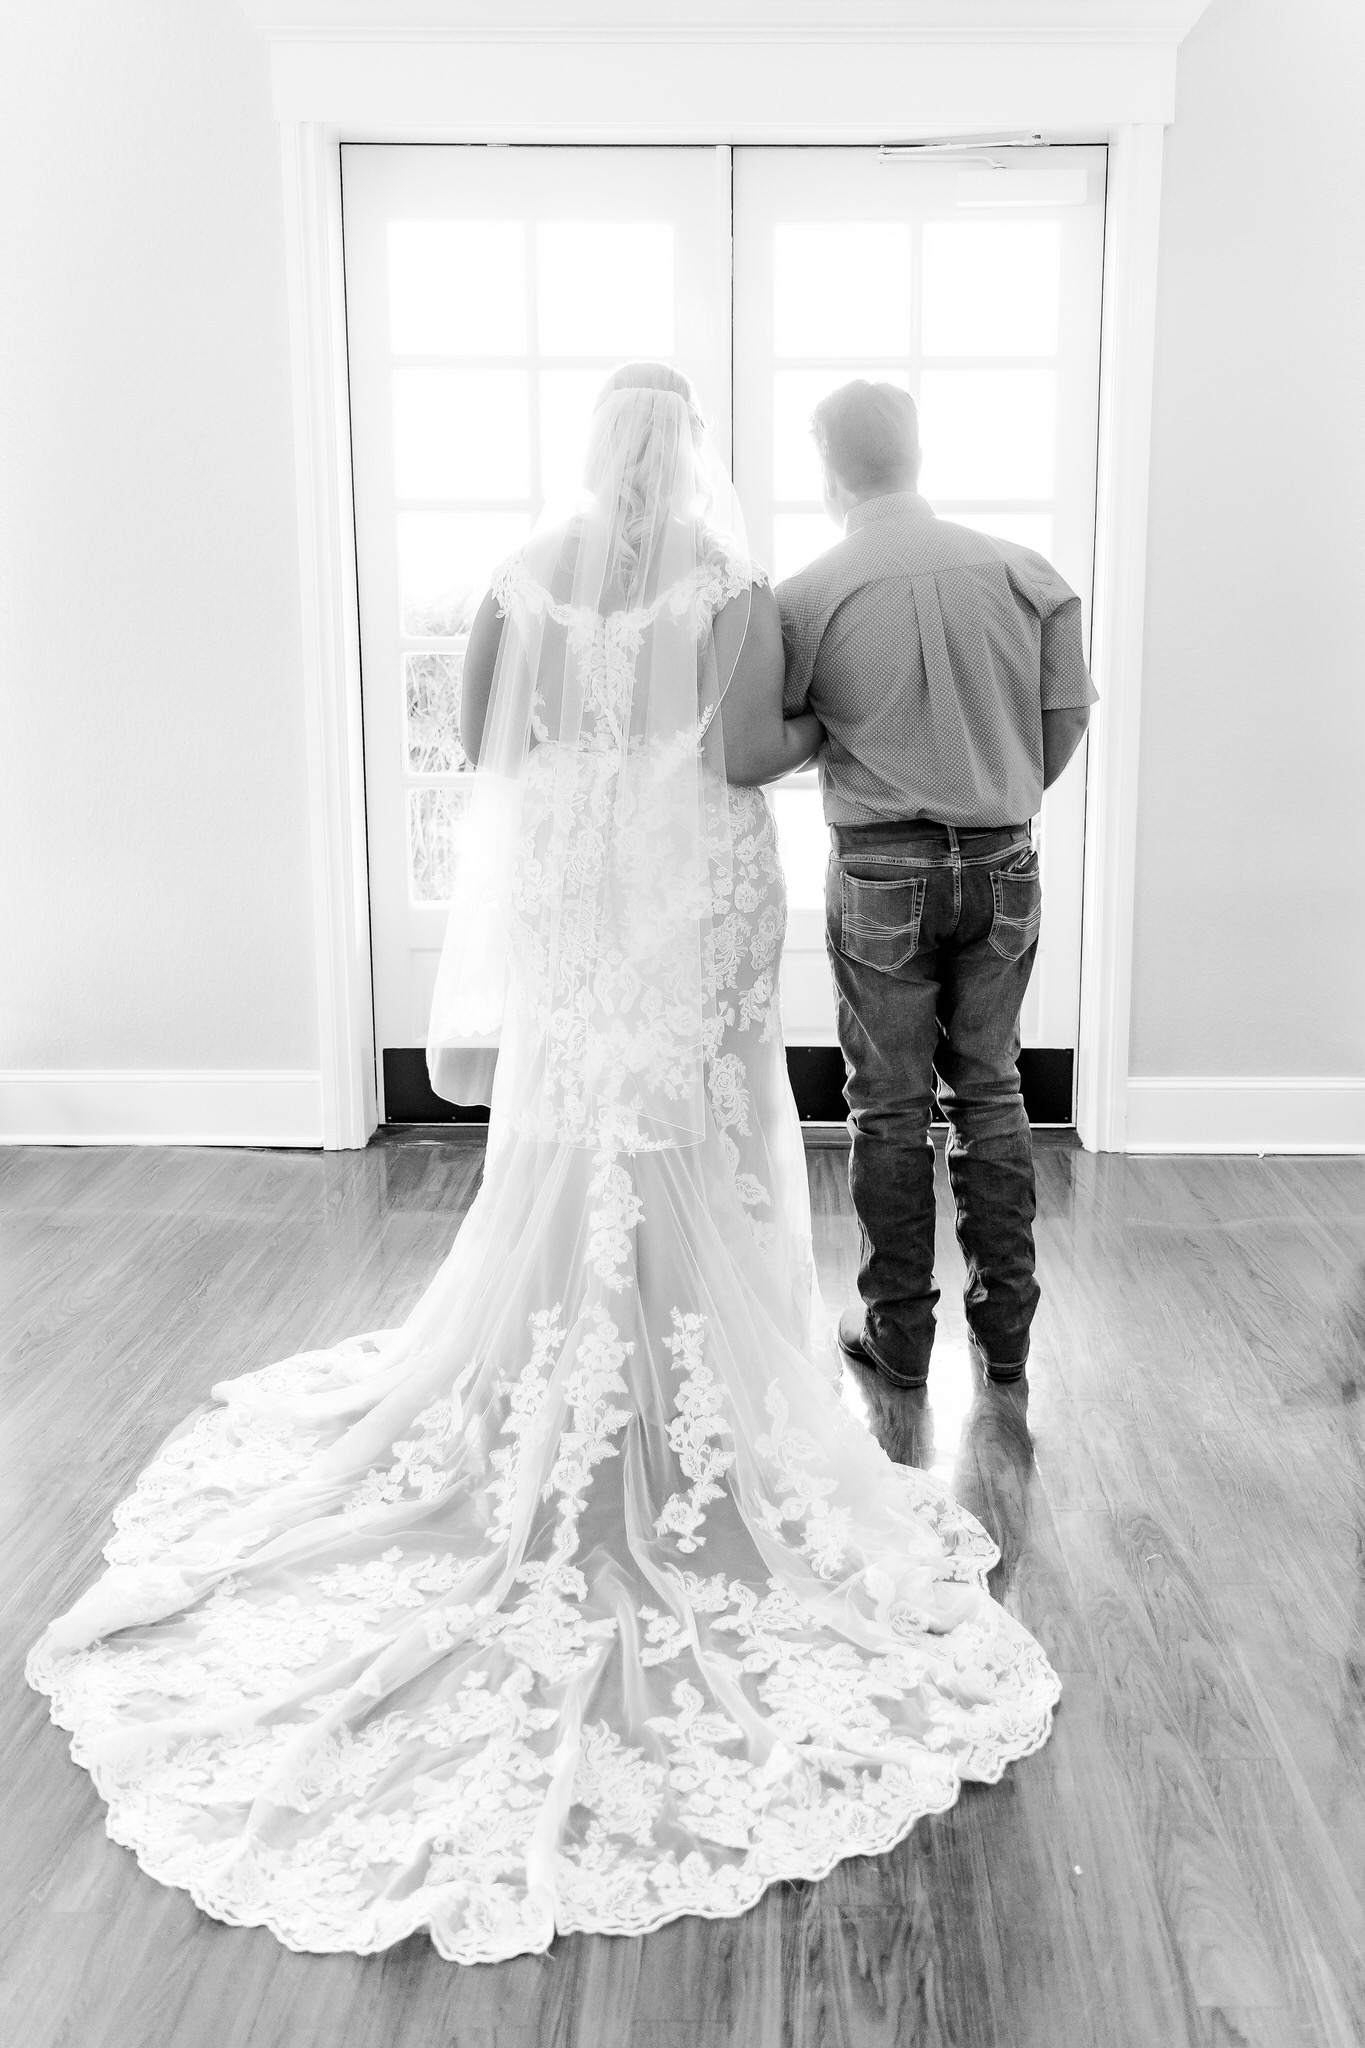 A Dusty Blue & Grey Rustic Wedding at Kendall Point in Boerne, TX by Dawn Elizabeth Studios, San Antonio Wedding Photographer